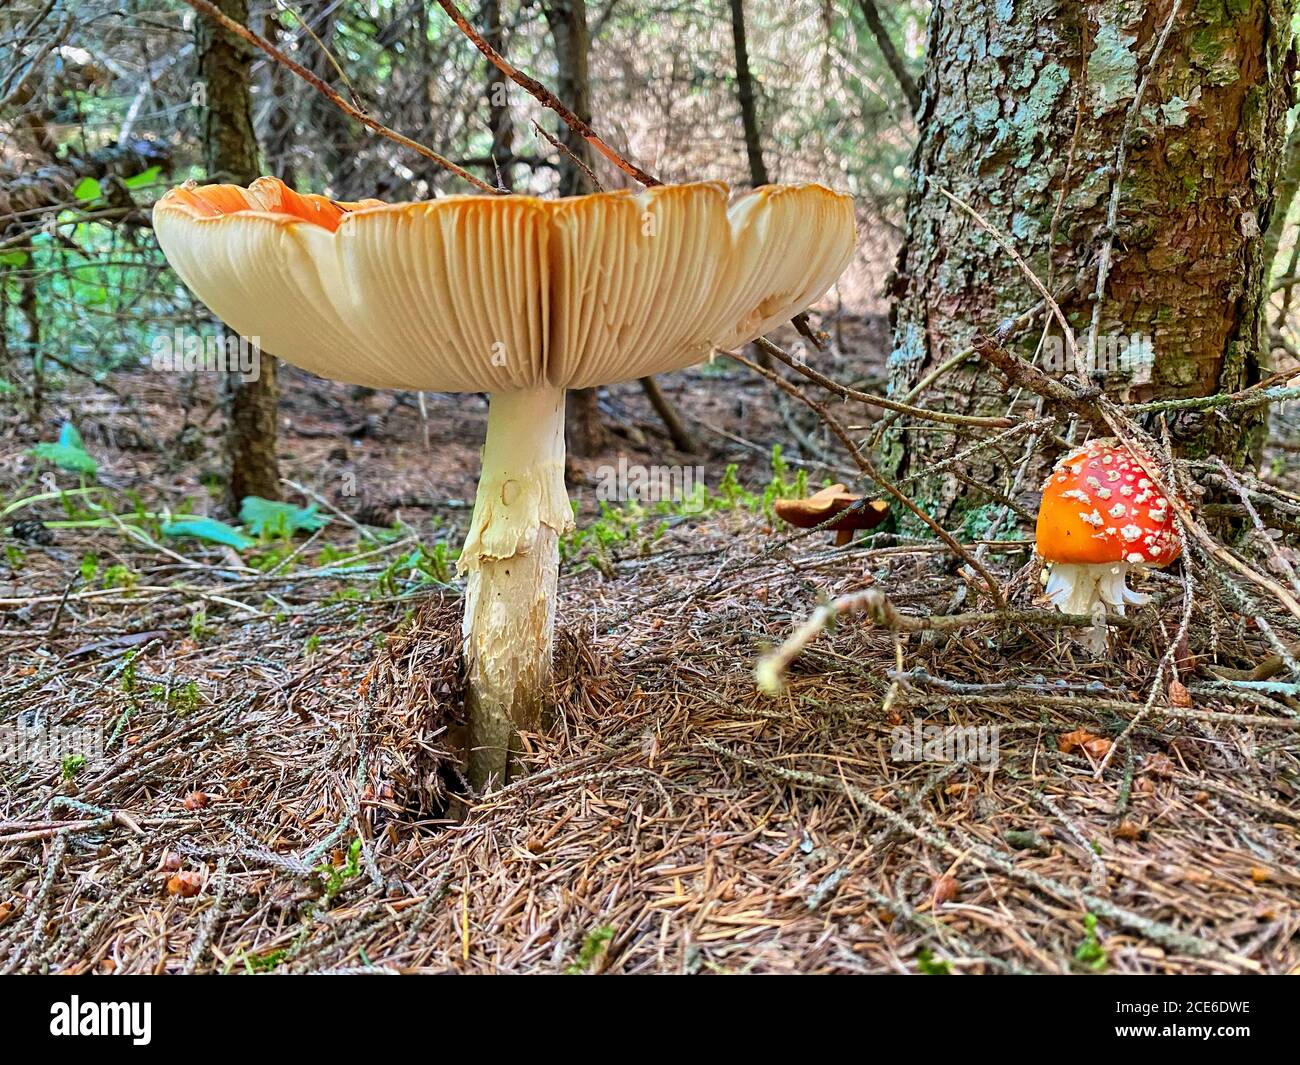 Magnifique champignon rouge toxique avec capuchon géant vu du niveau de l'herbe. Banque D'Images